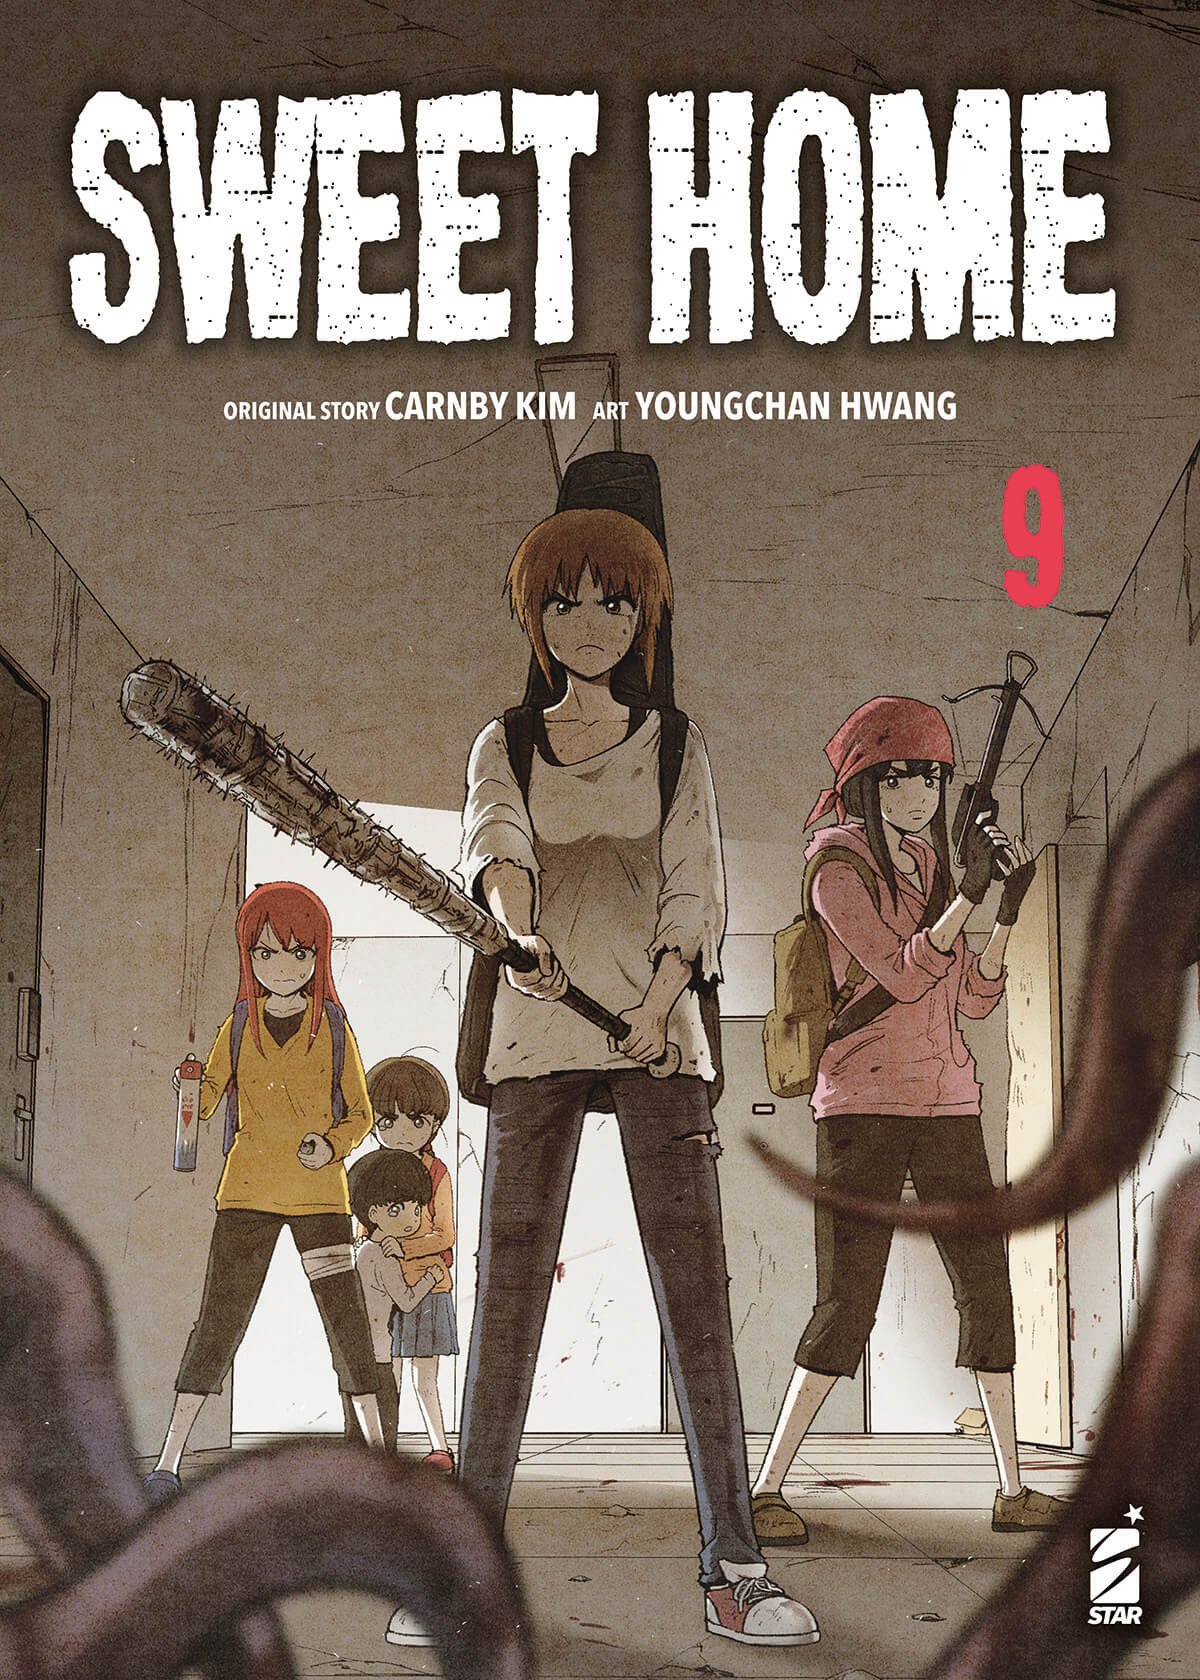 Sweet Home 9, parmi les sorties mangas de Star Comics du 22 novembre 2023.